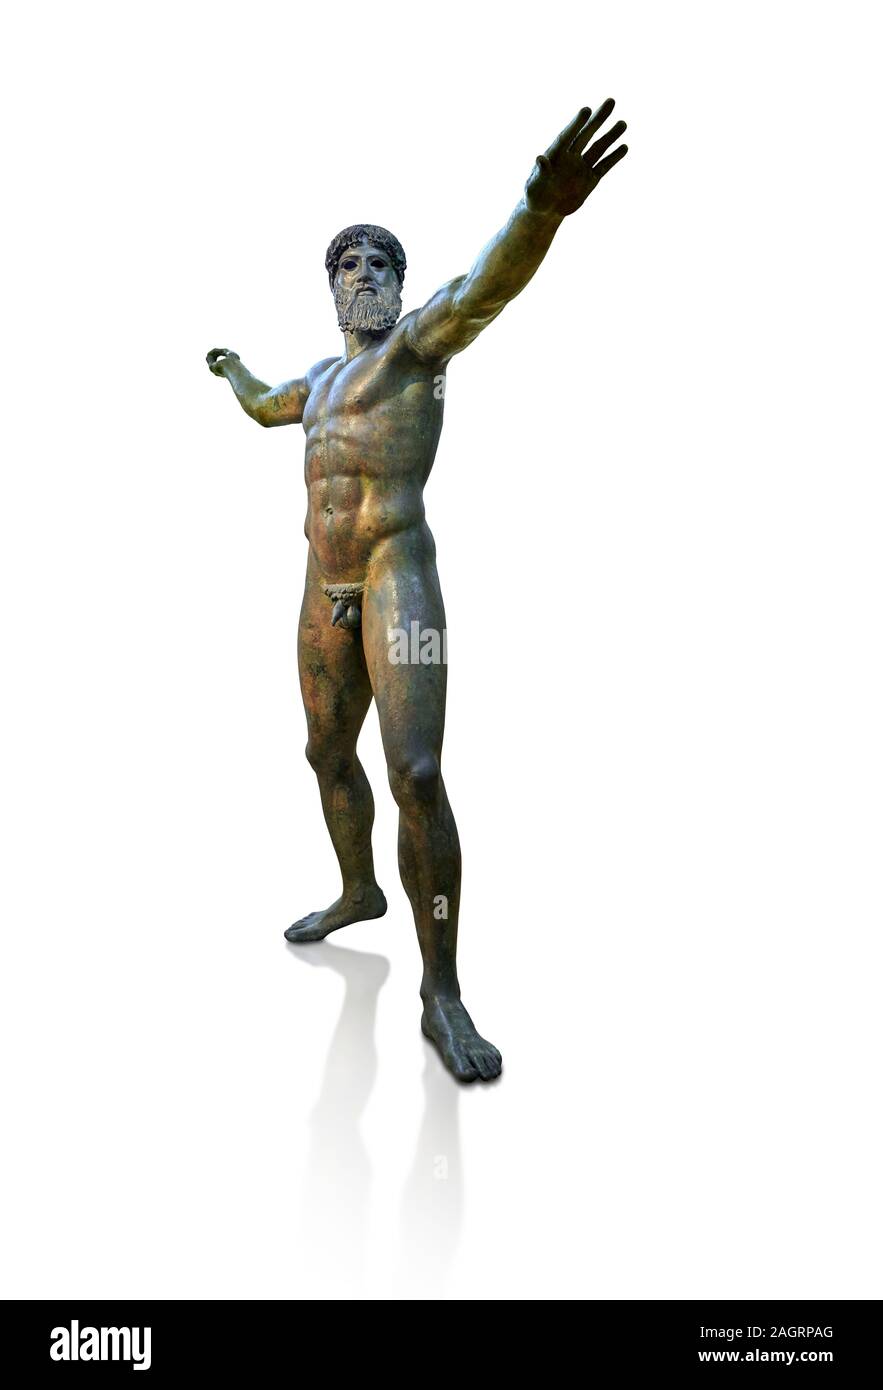 Anfang der klassischen Antike griechische Bronzestatue des Zeus und Poseidon, ca. 450 v. Chr.. Athen nationalen Arcjaeological Museum, Kat.-Nr. X15161. Weißer Hintergrund Stockfoto